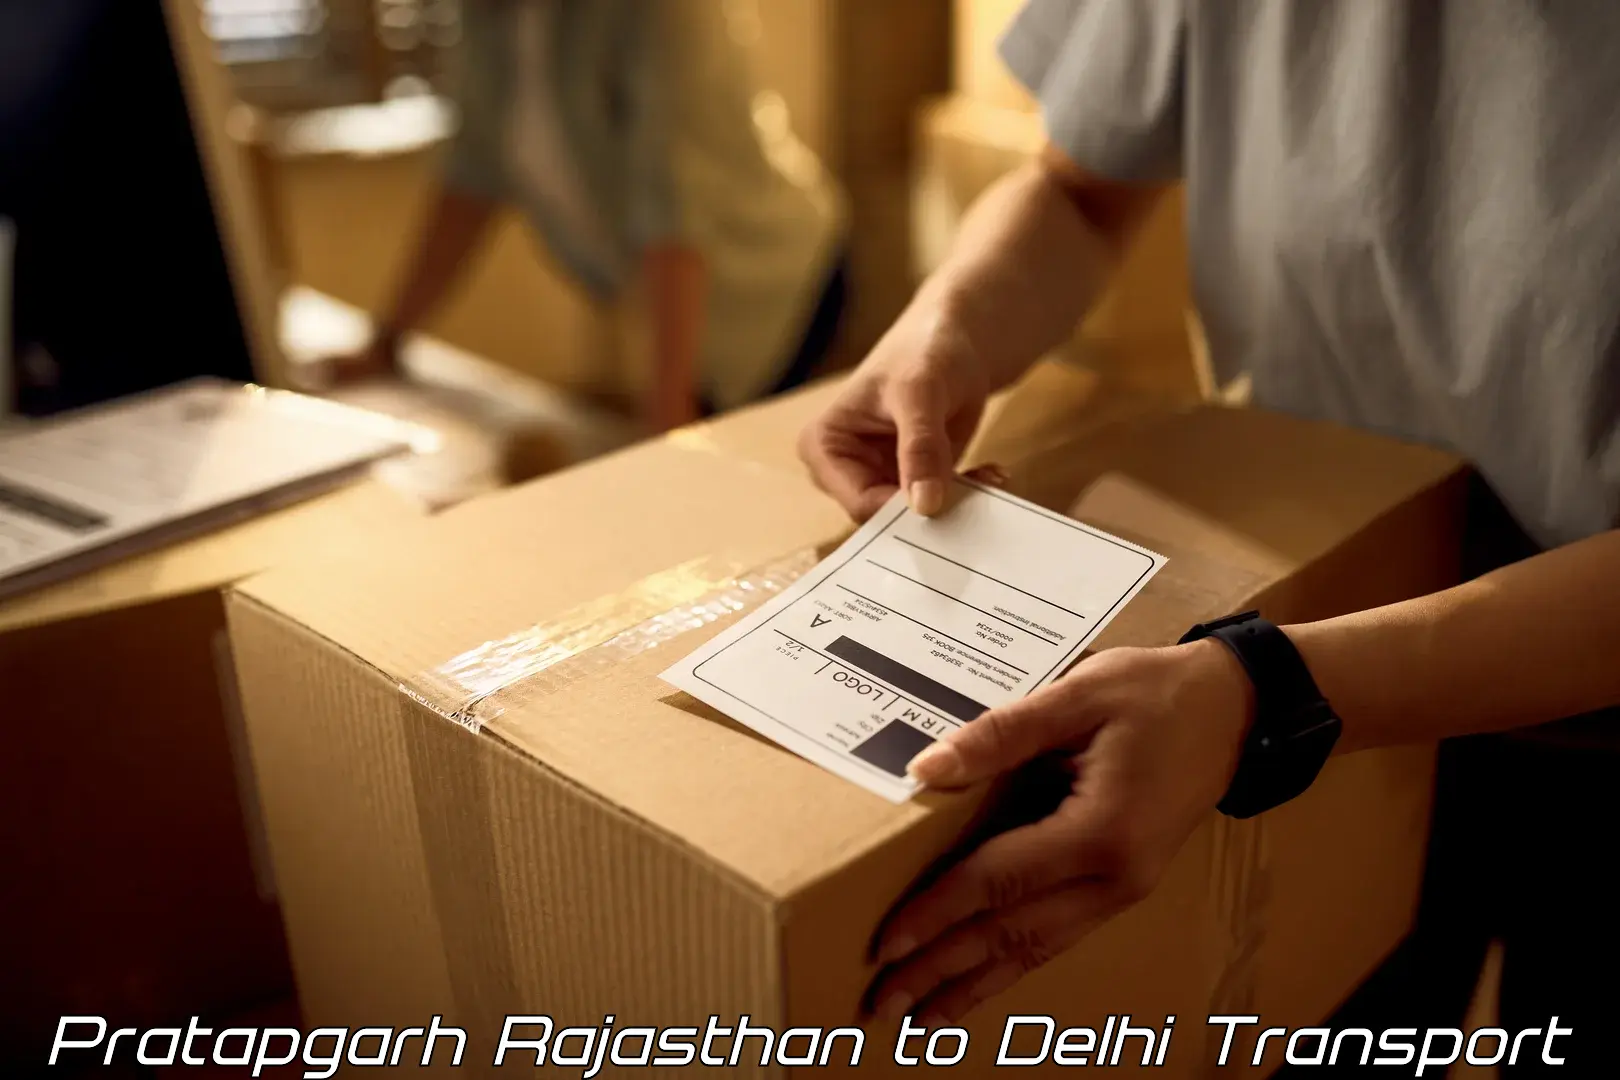 Air freight transport services Pratapgarh Rajasthan to Jamia Millia Islamia New Delhi